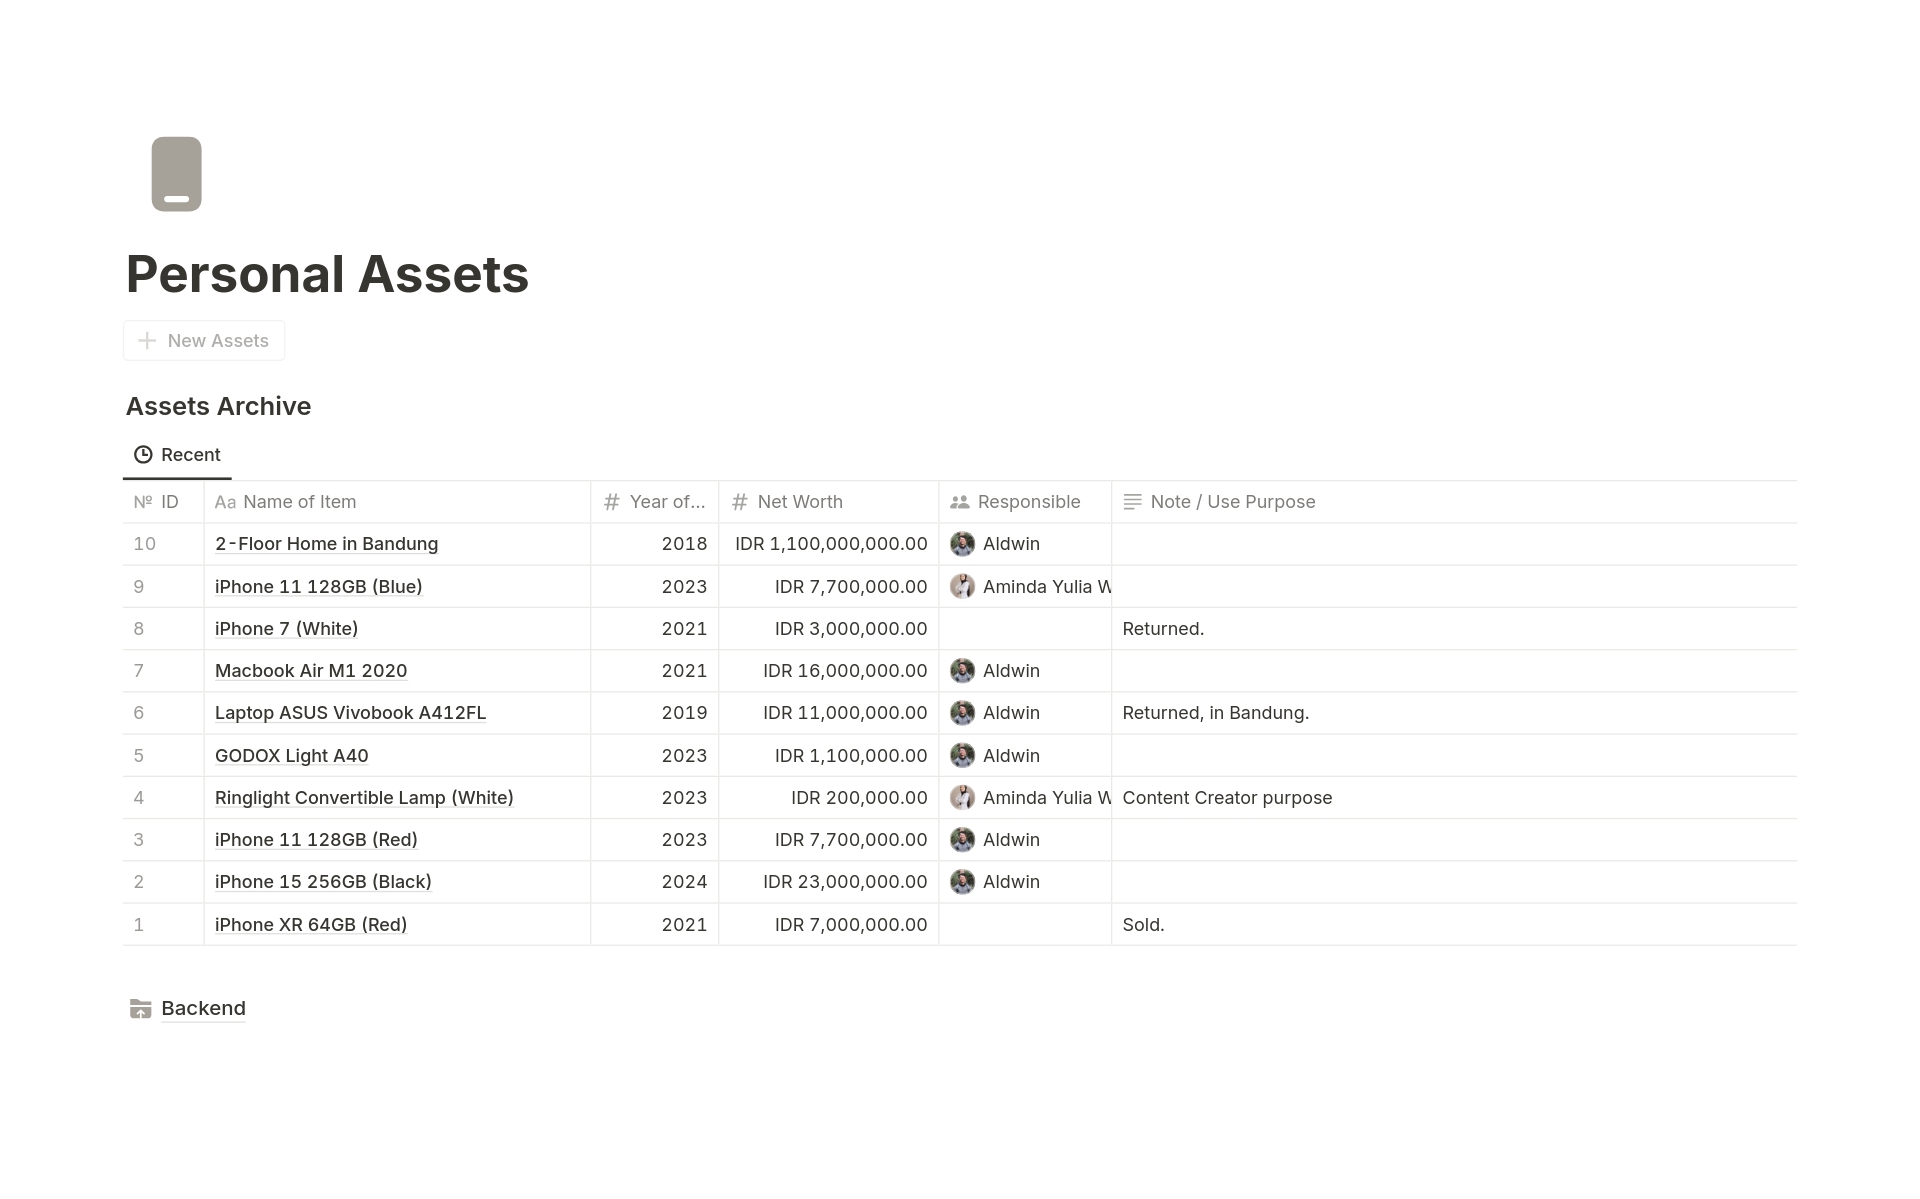 Vista previa de plantilla para Personal Assets Tracker